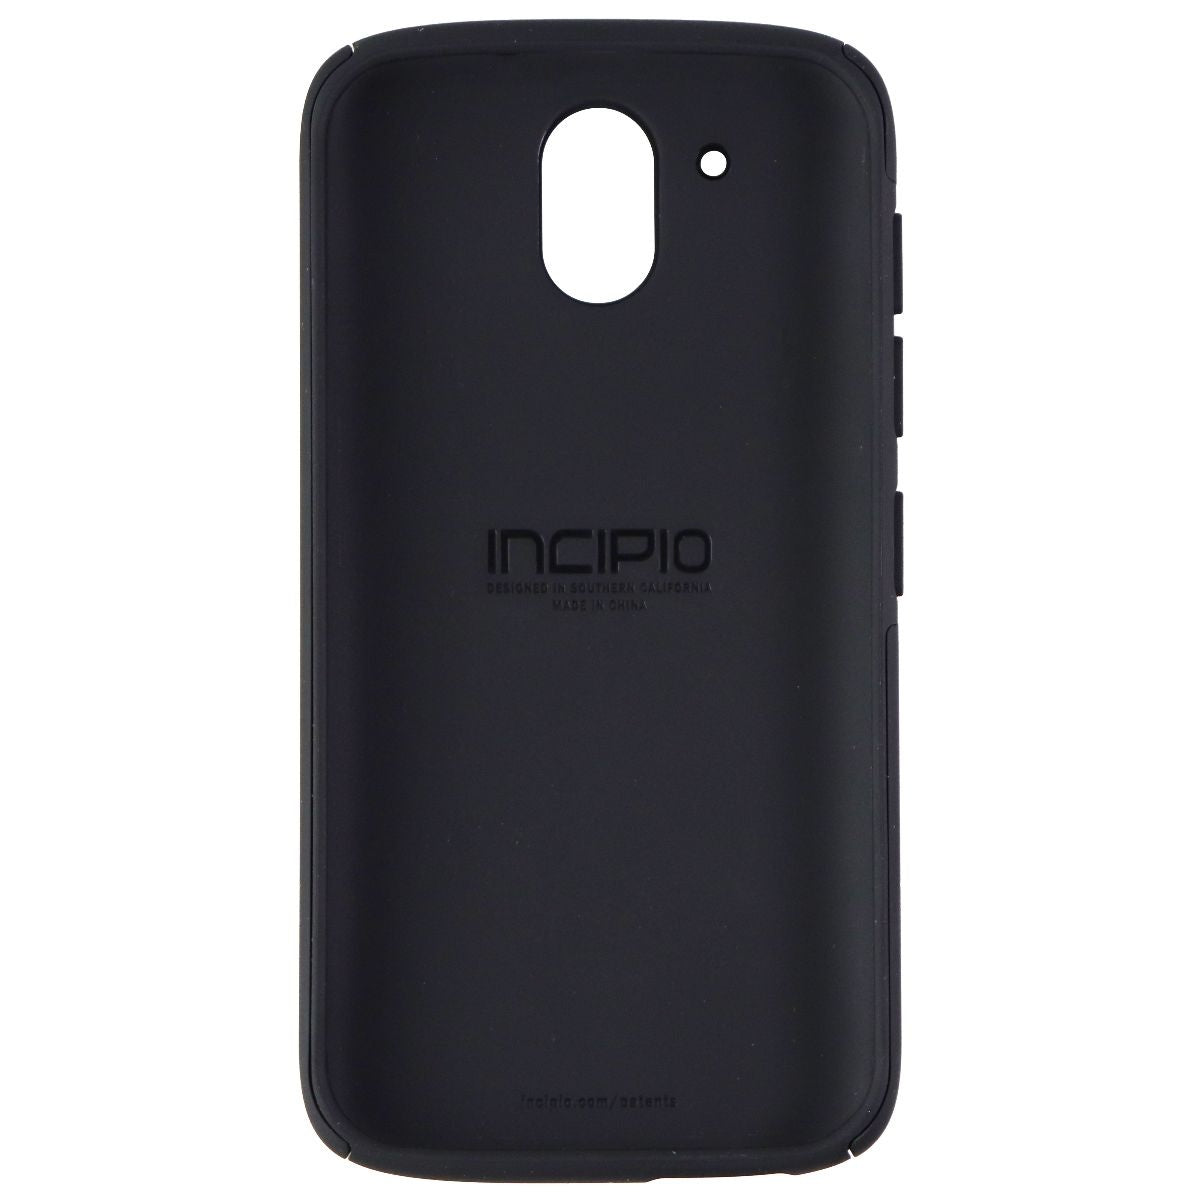 Incipio DualPro Series Phone Case for HTC Desire 526 - Black